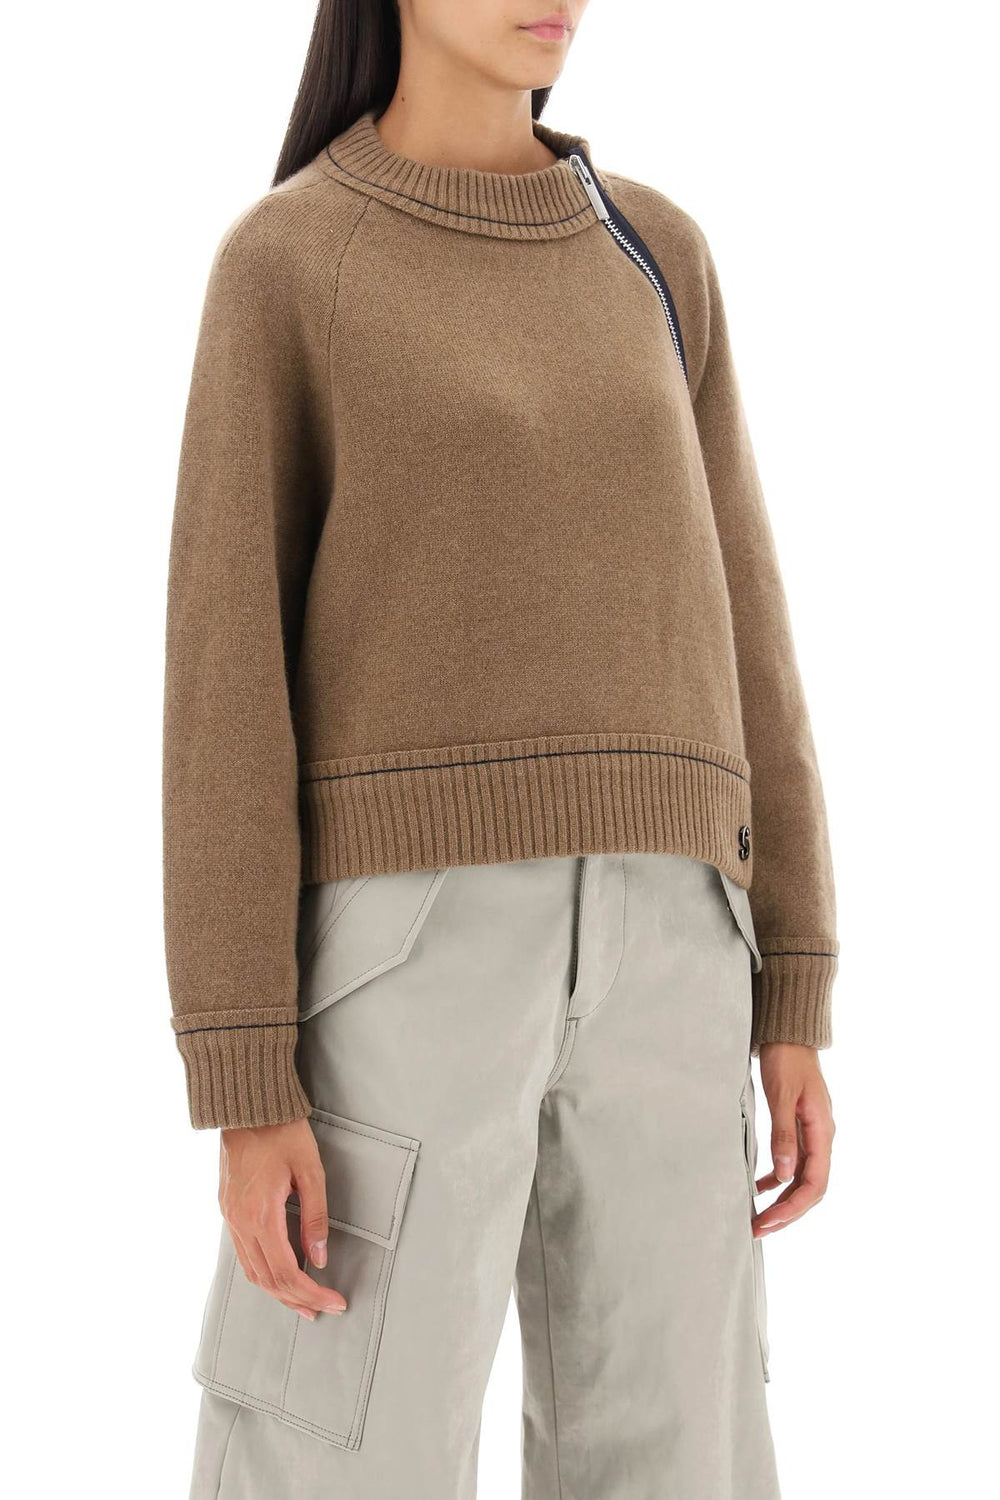 Sacai cashmere cotton sweater-1